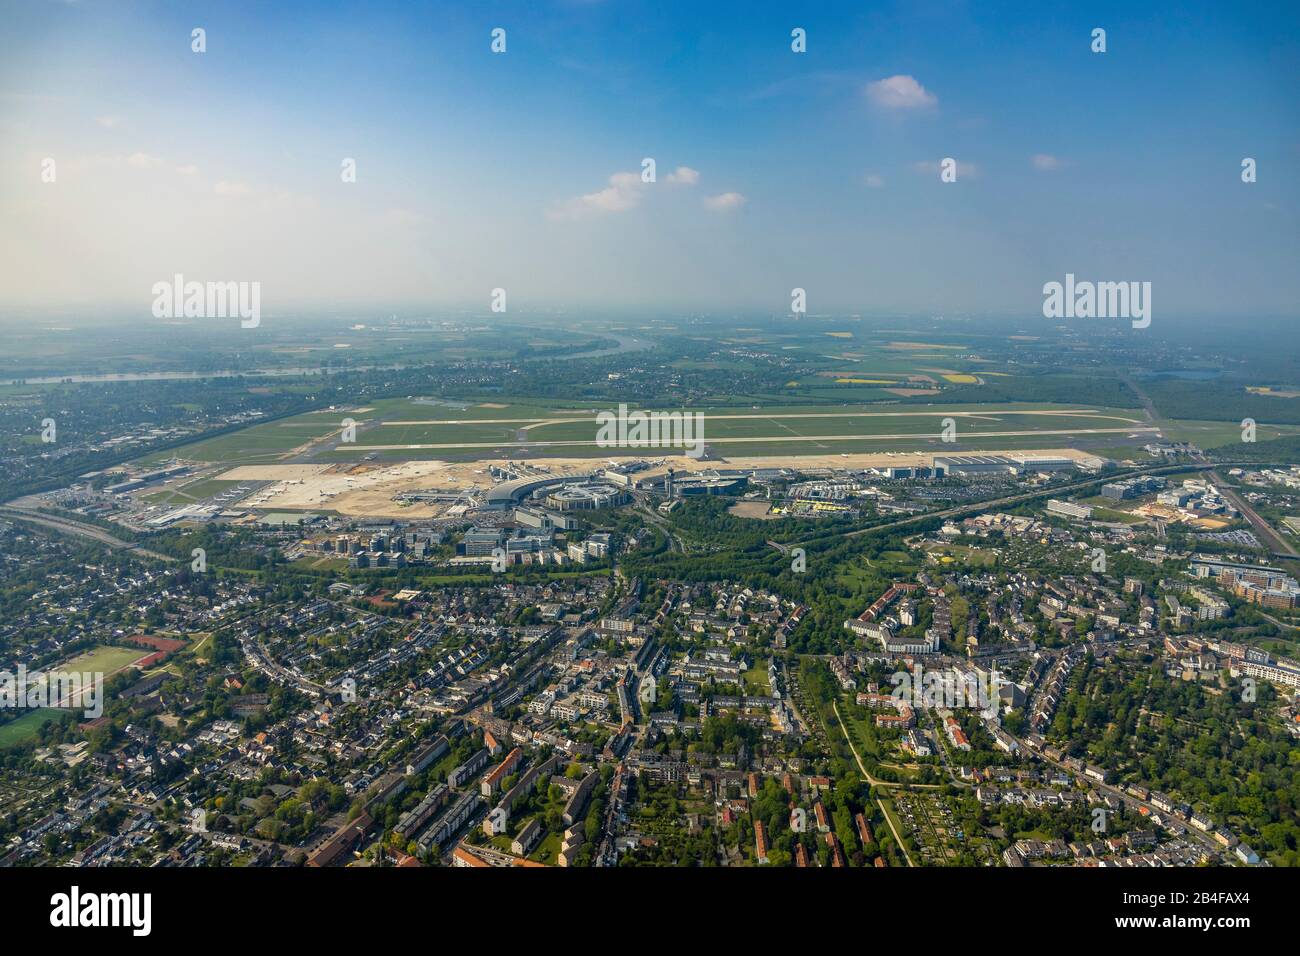 Vue aérienne de l'aéroport Düsseldorf dans le quartier Lohausen et le quartier Lichtenbroich à Düsseldorf en Rhénanie-du-Nord-Westphalie, Allemagne. Banque D'Images